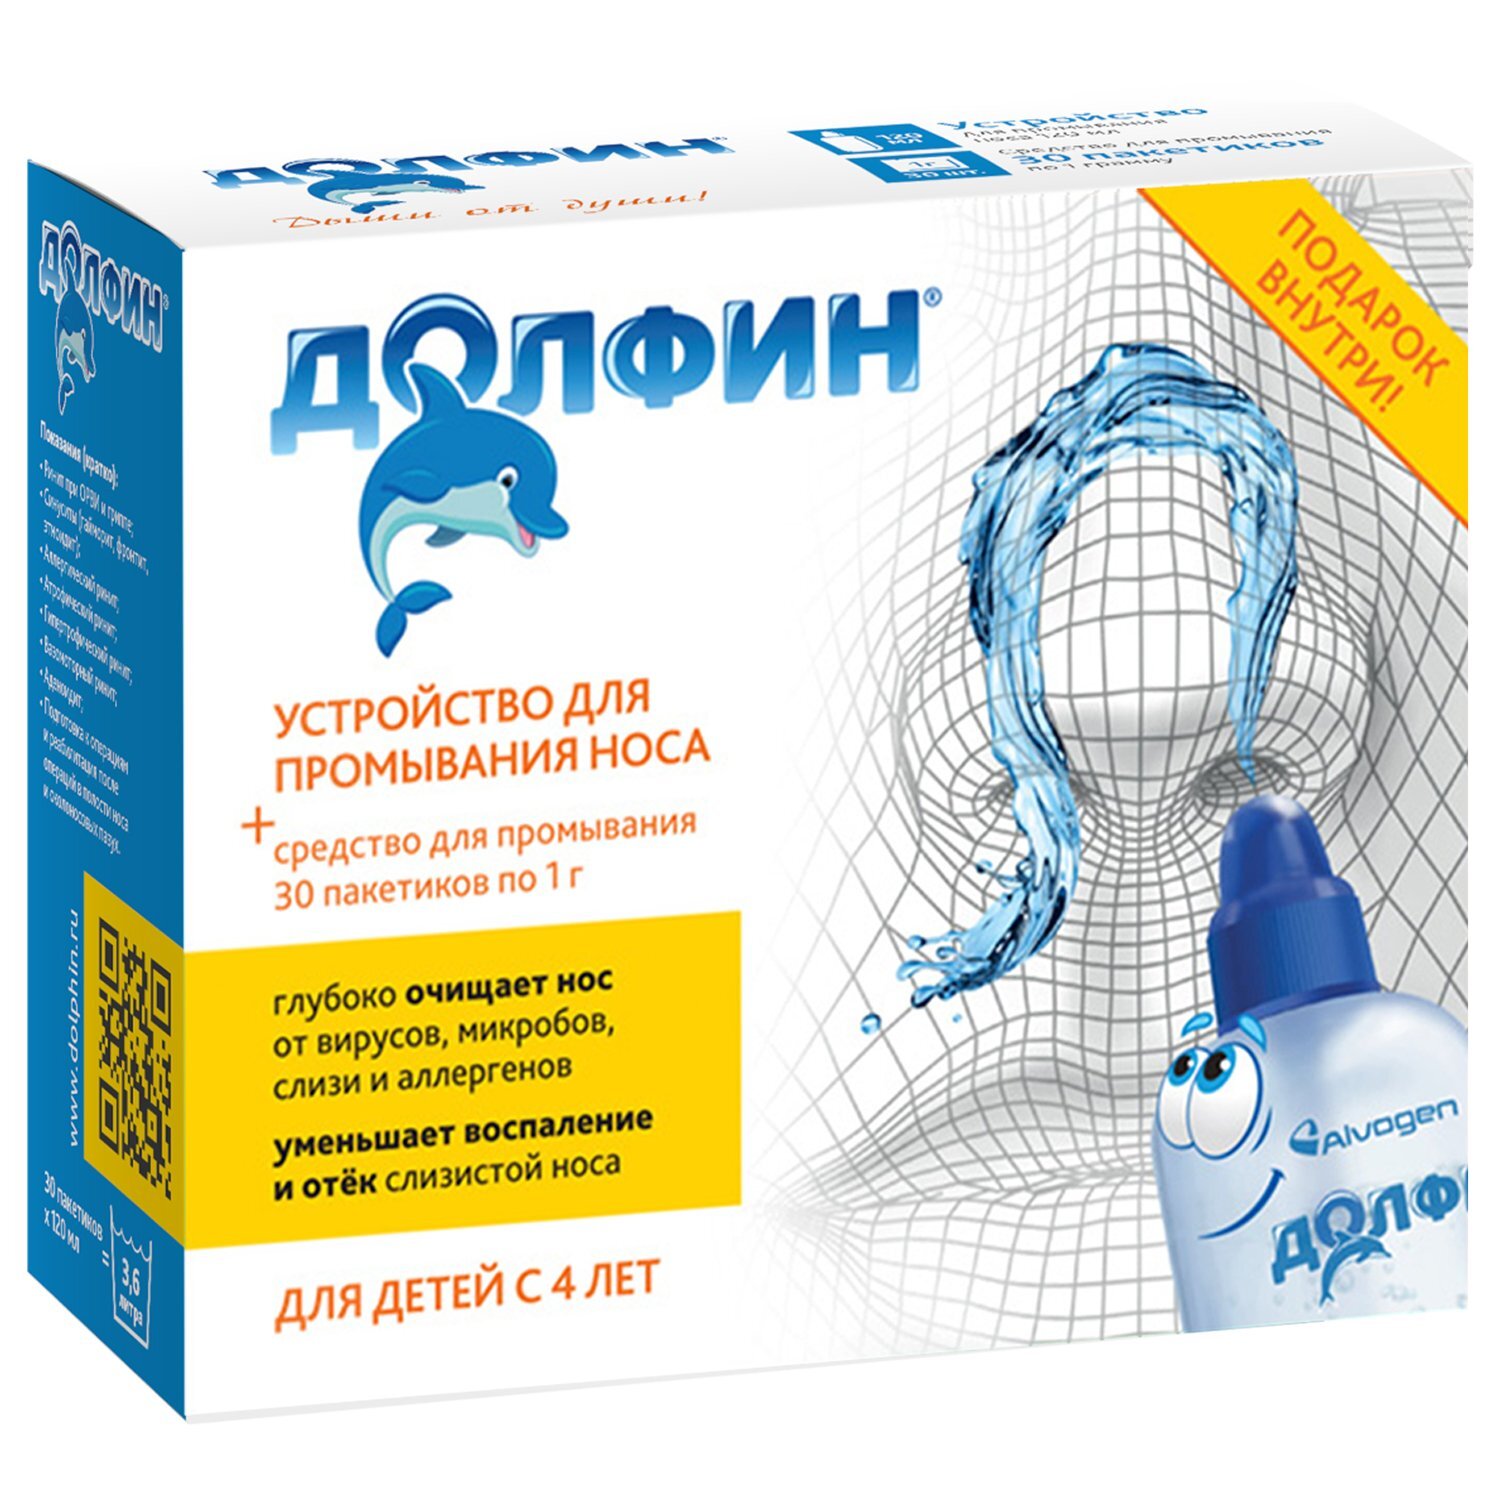 Купить Долфин для детей устройство для промыв носа 120 мл + пакеты 1 г 30 шт., Zentiva